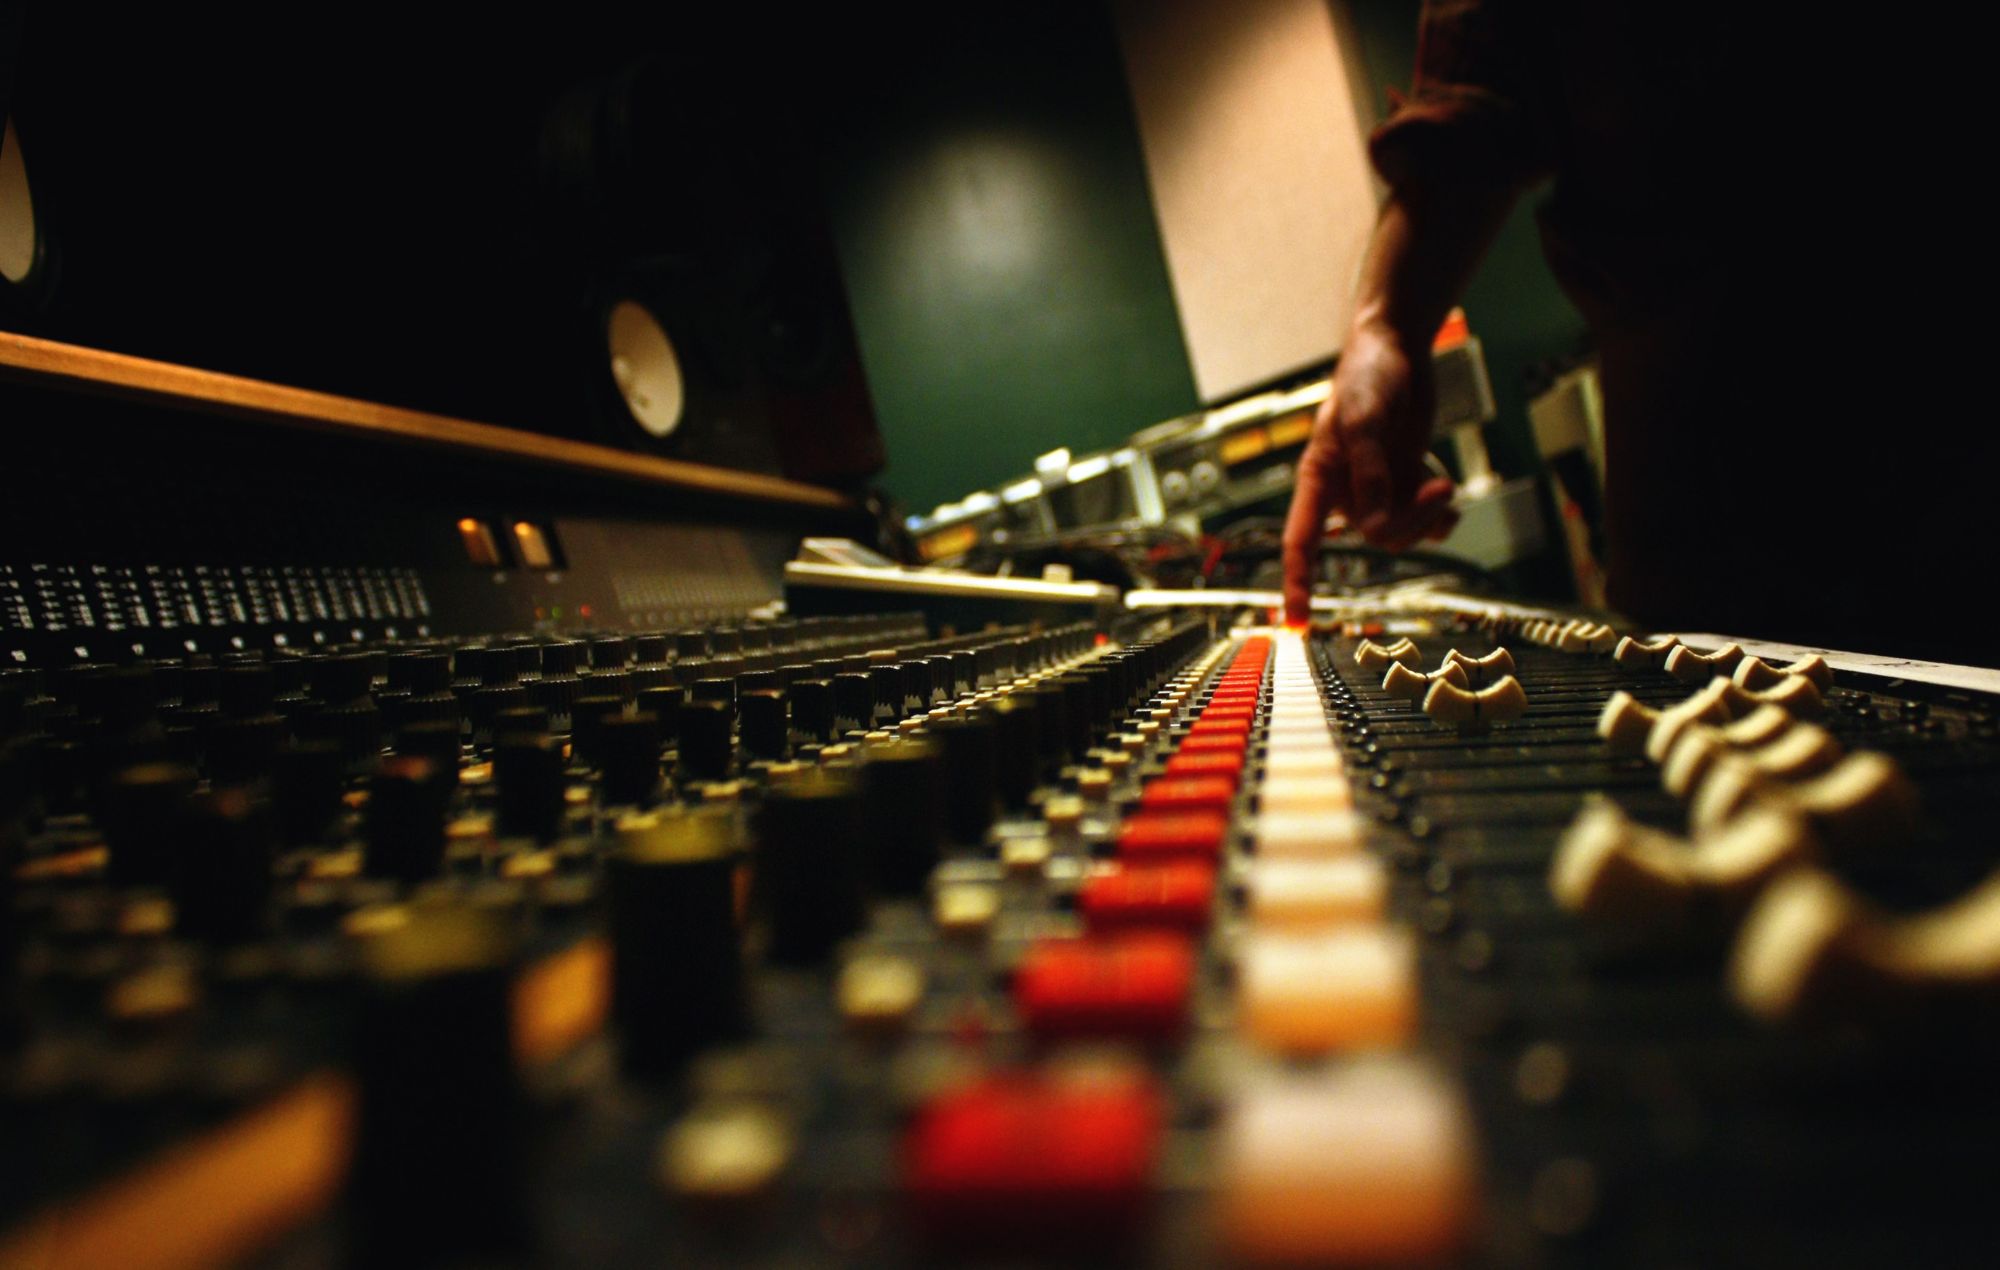 Soundboard in recording studio stock image